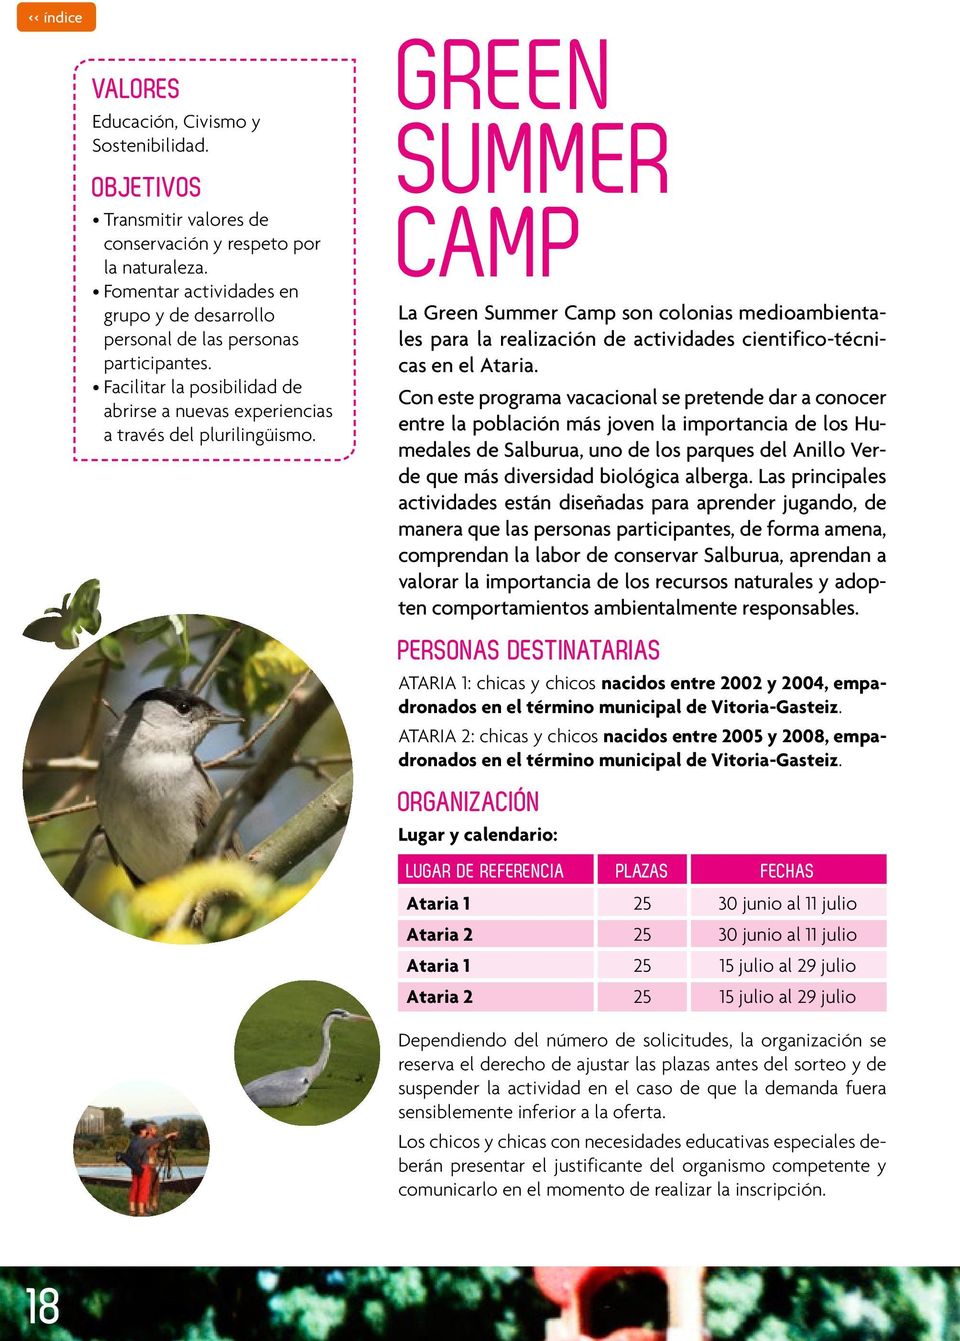 GREEN SUMMER CAMP La Green Summer Camp son colonias medioambientales para la realización de actividades cientifico-técnicas en el Ataria.